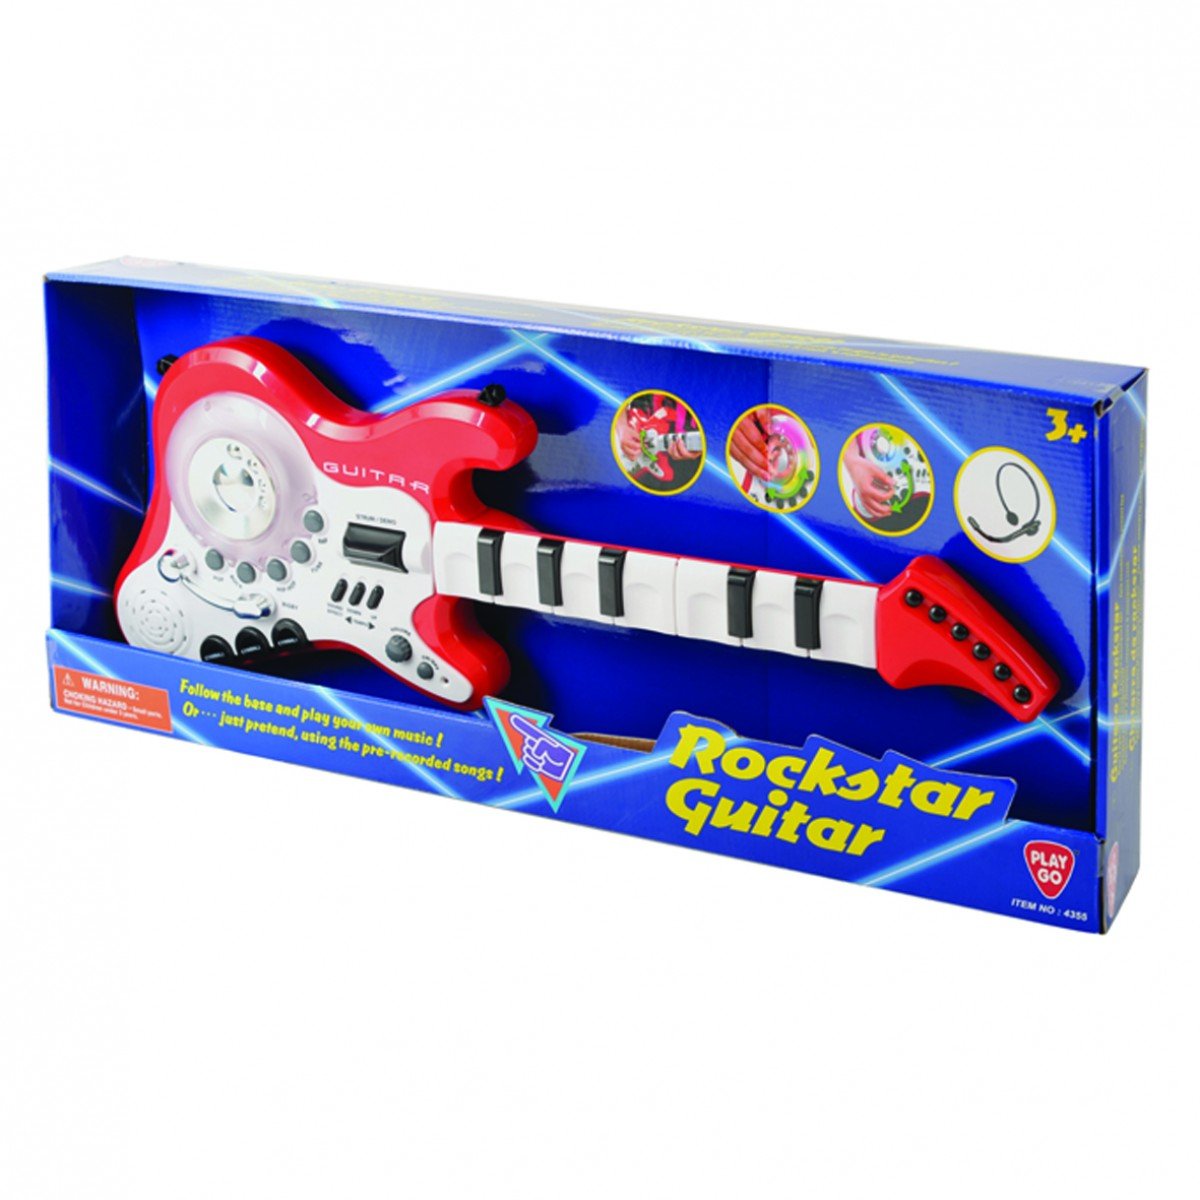 กีตาร์ร็อคสตาร์ Rockstar Guitar (รุ่น 4355) ยี่ห้อ PLAYGO